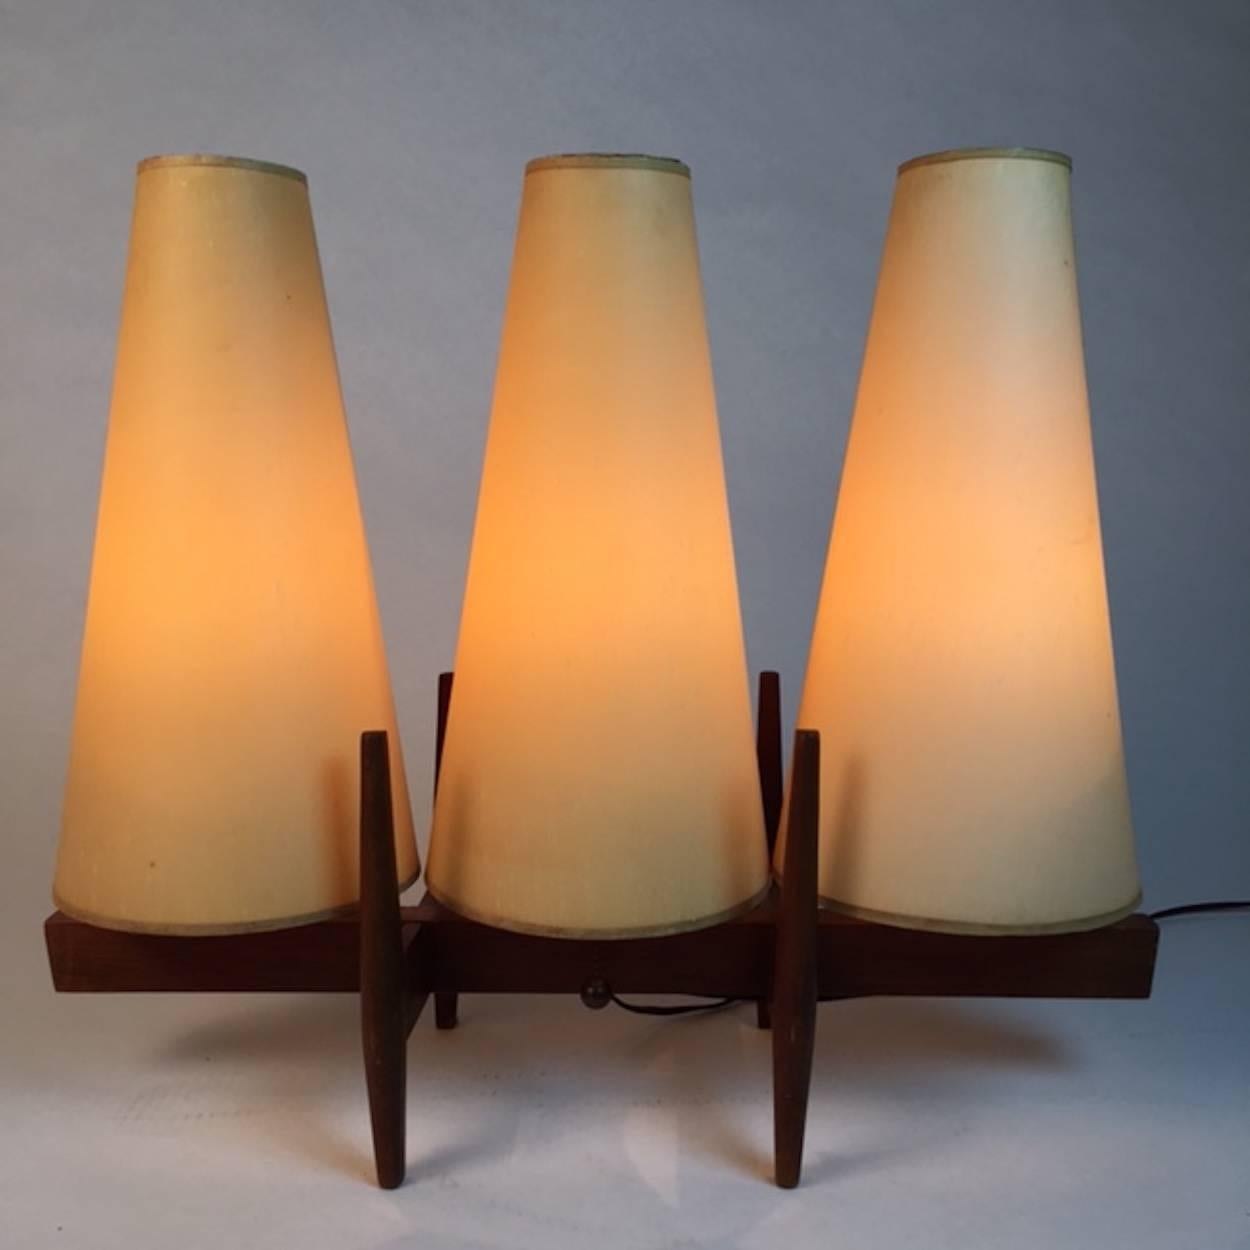 unique table lamp